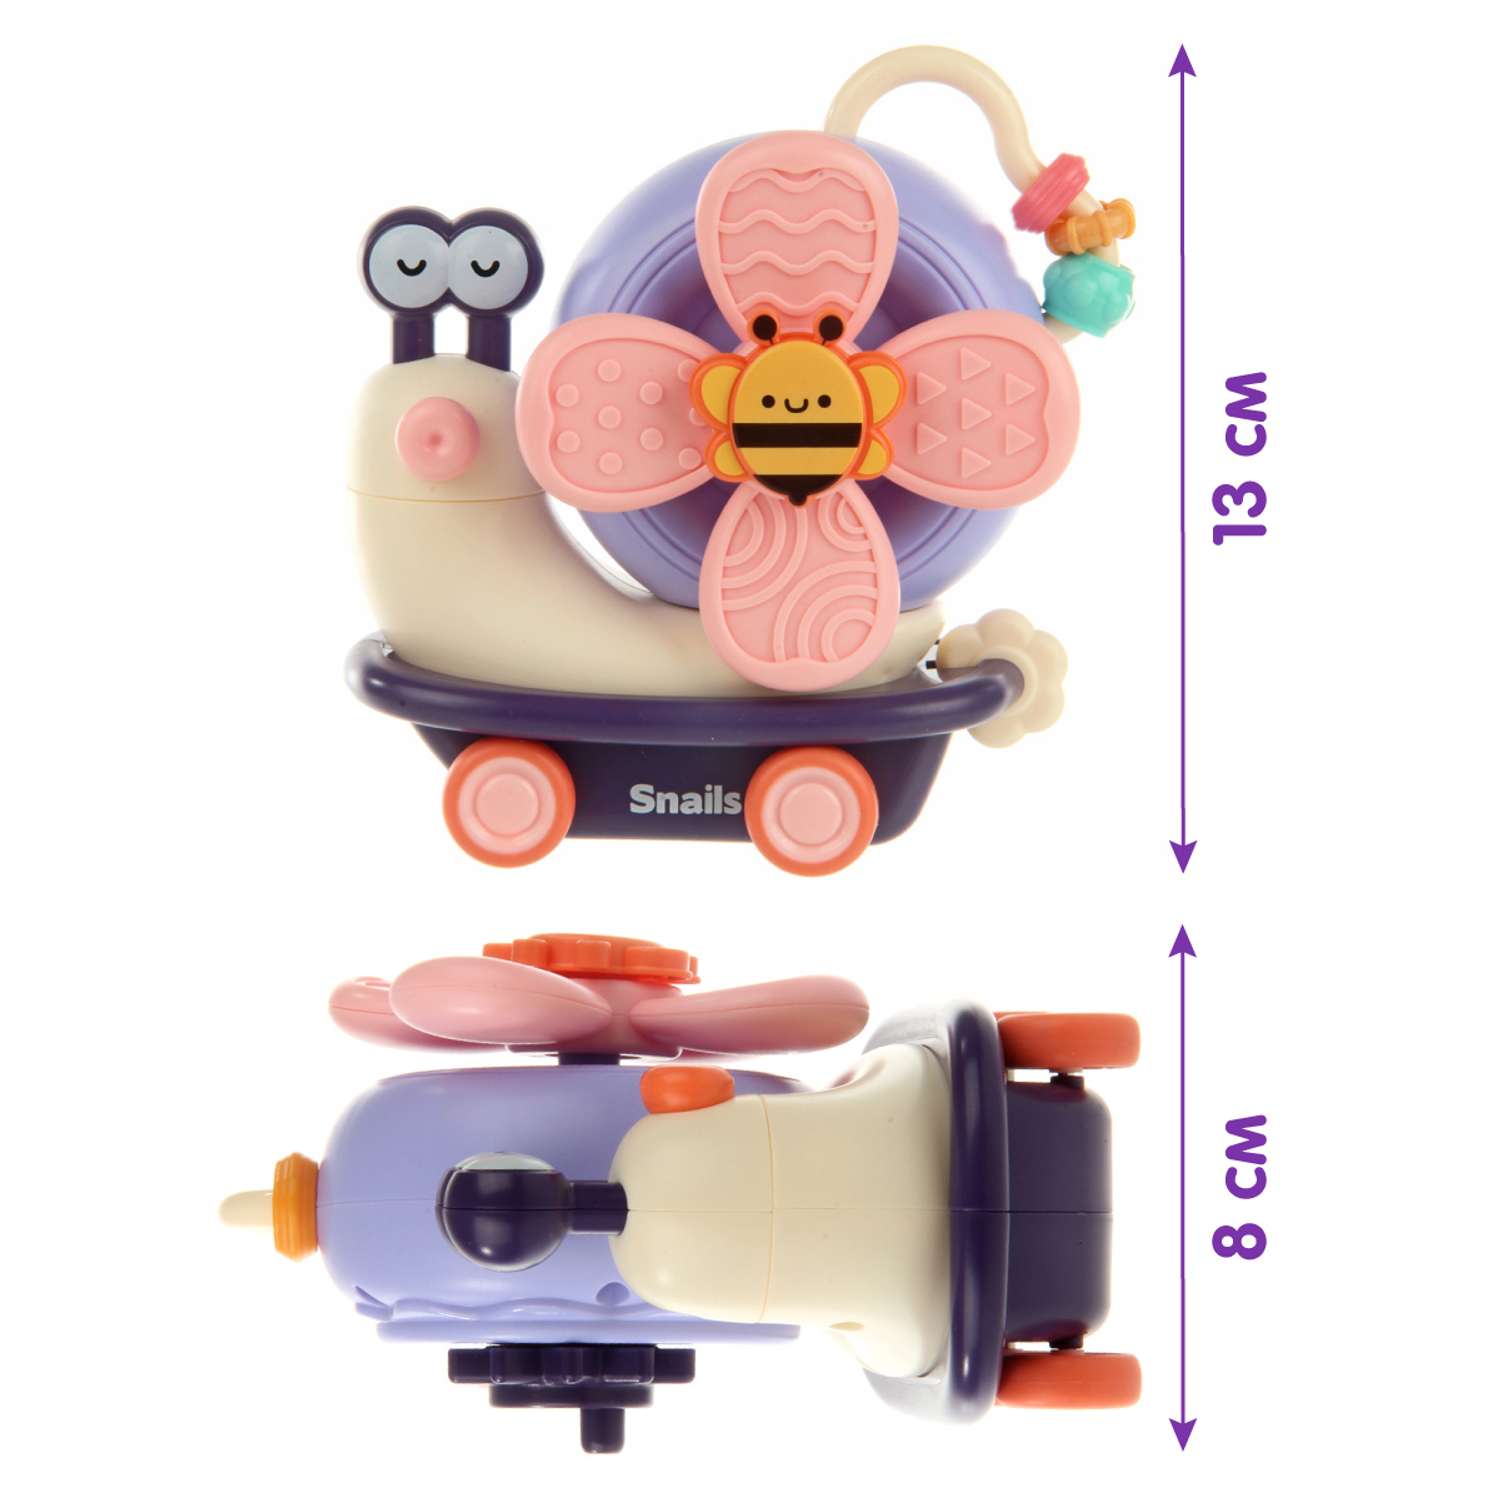 Развивающая игрушка Ути Пути 2 в 1 спиннер и покатушка на присоске Мадам Улитка - фото 2